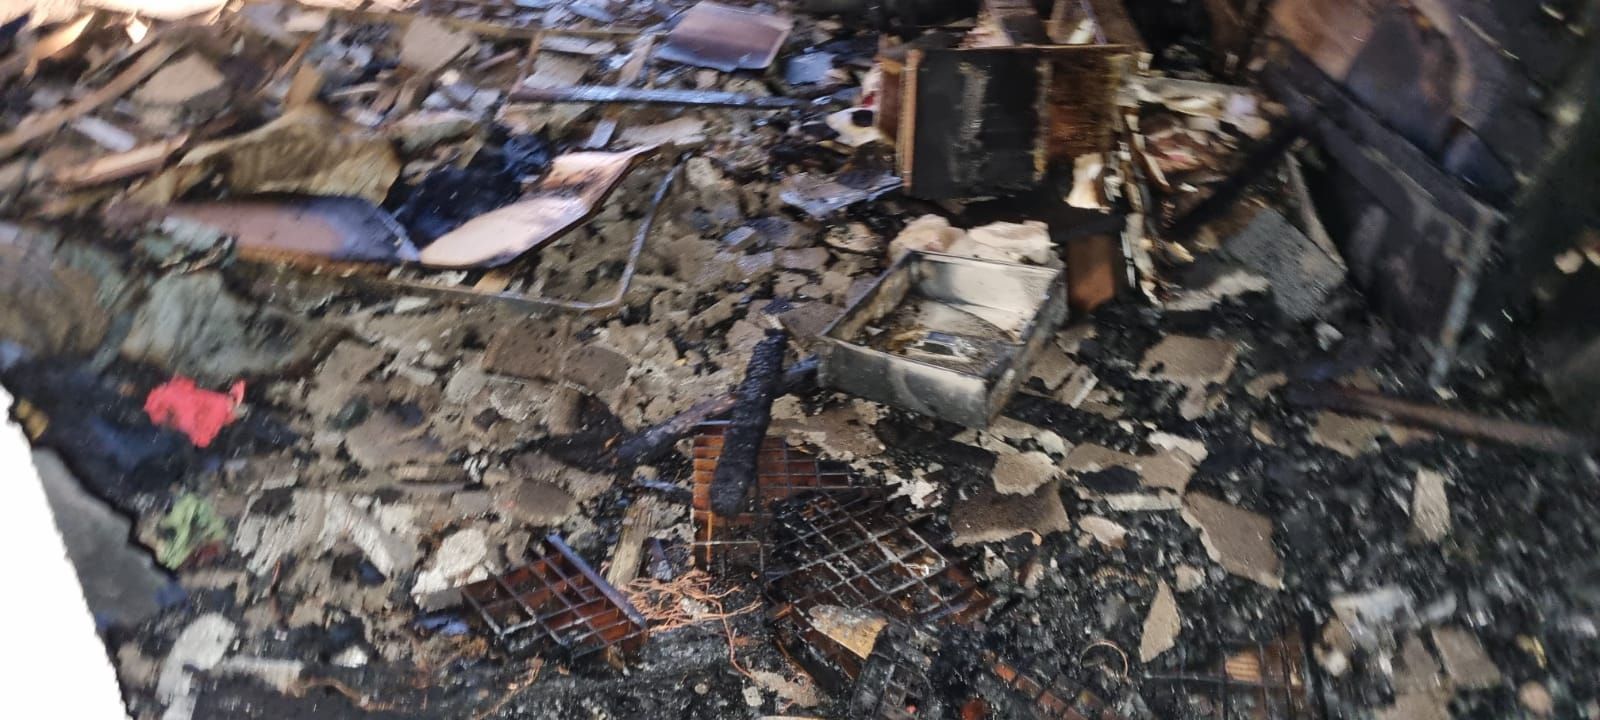 Un incendio destruye un piso en Santa Margalida